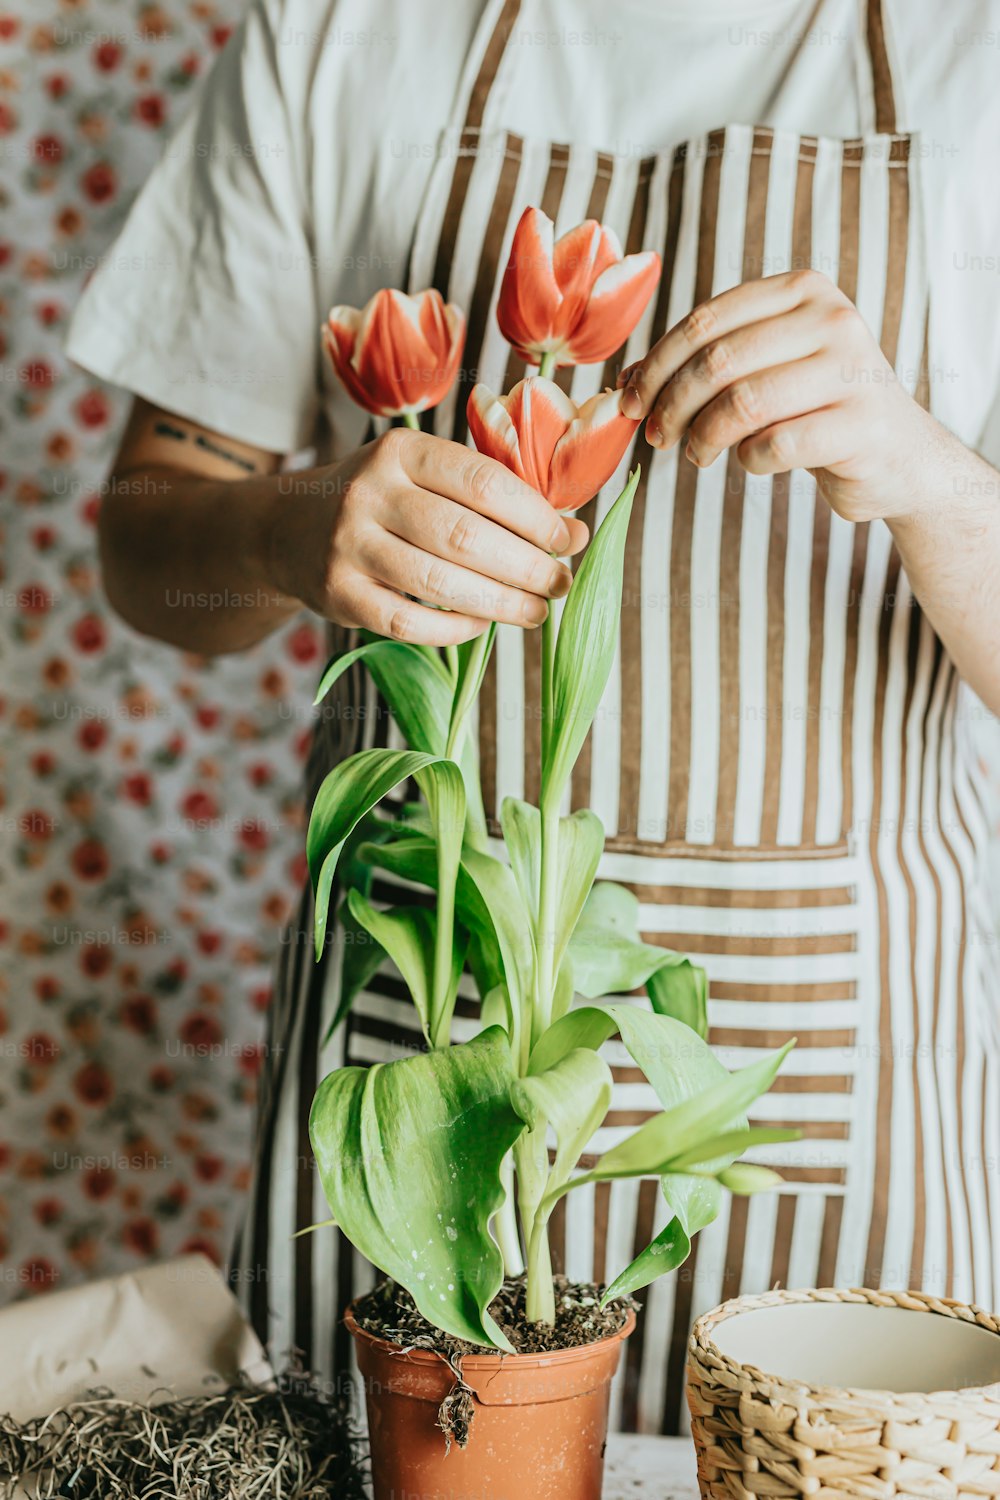 uma pessoa em um avental segurando um vaso de planta